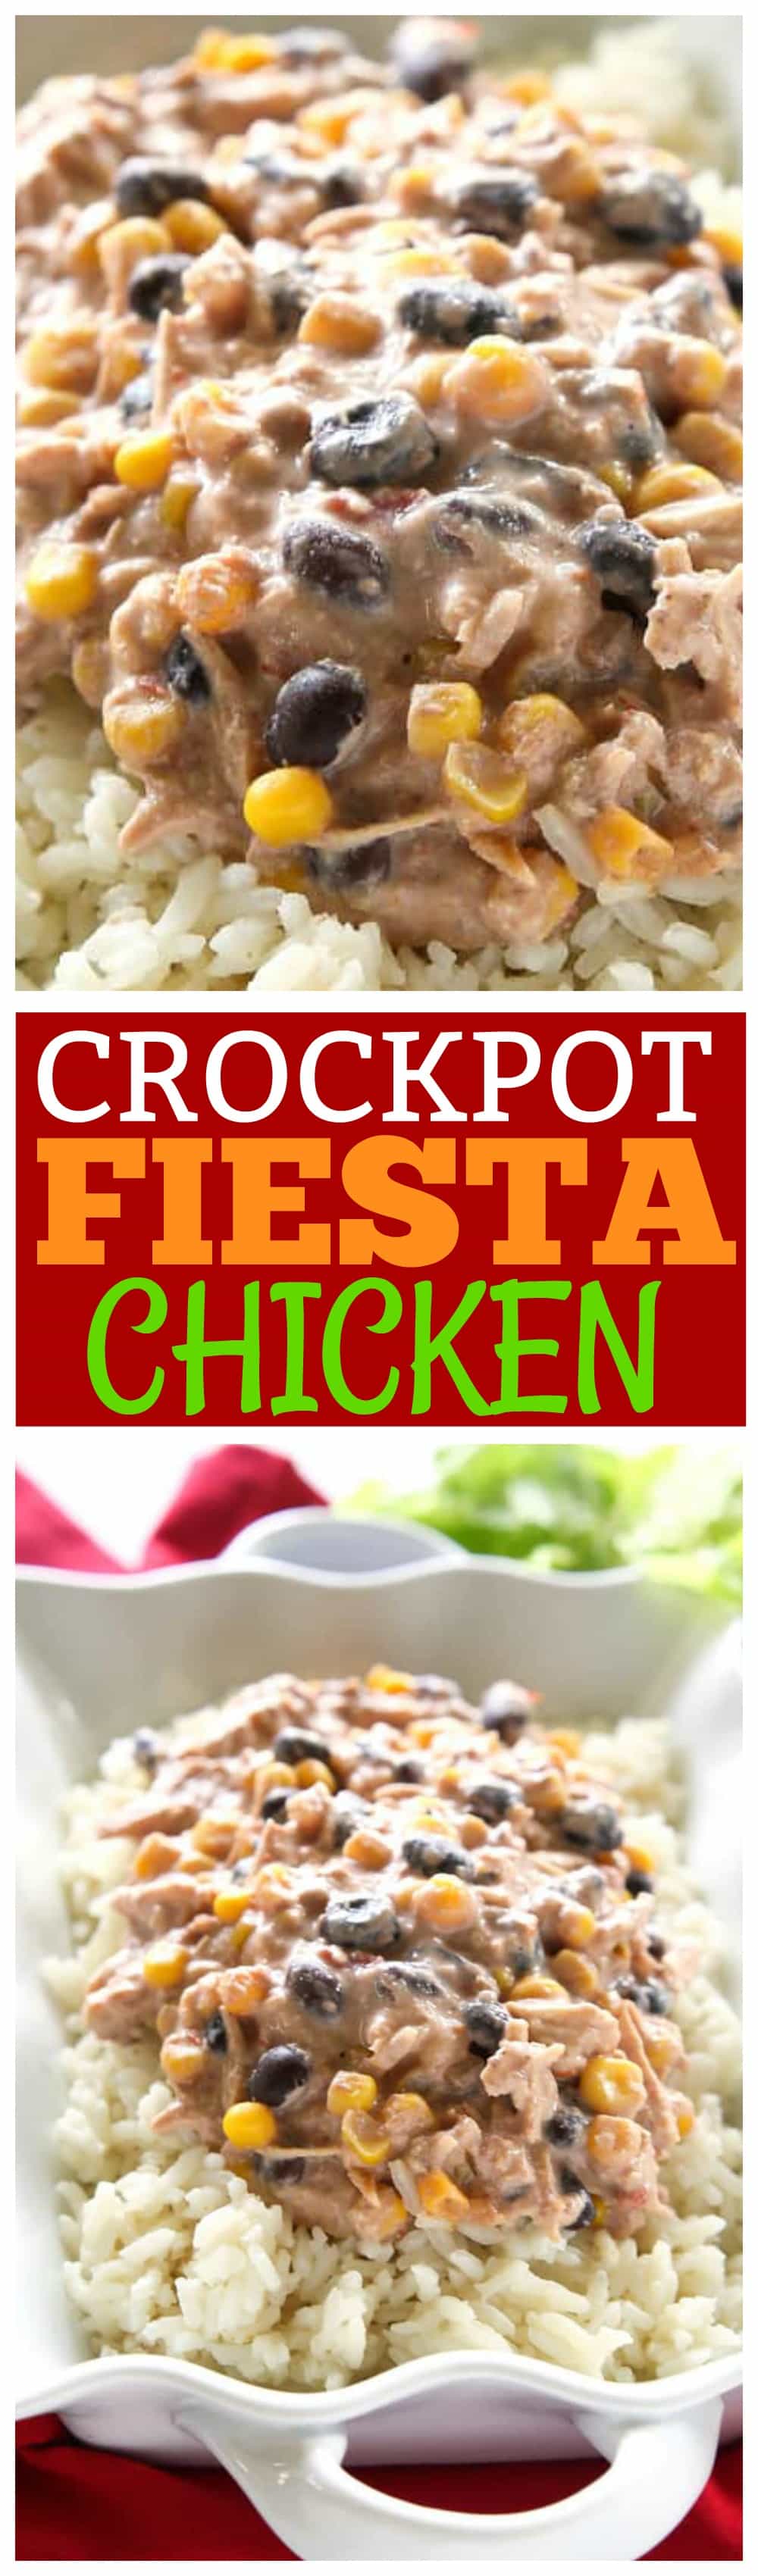 McCormick Slow Cooker, Fiesta Chicken Seasoning Mix